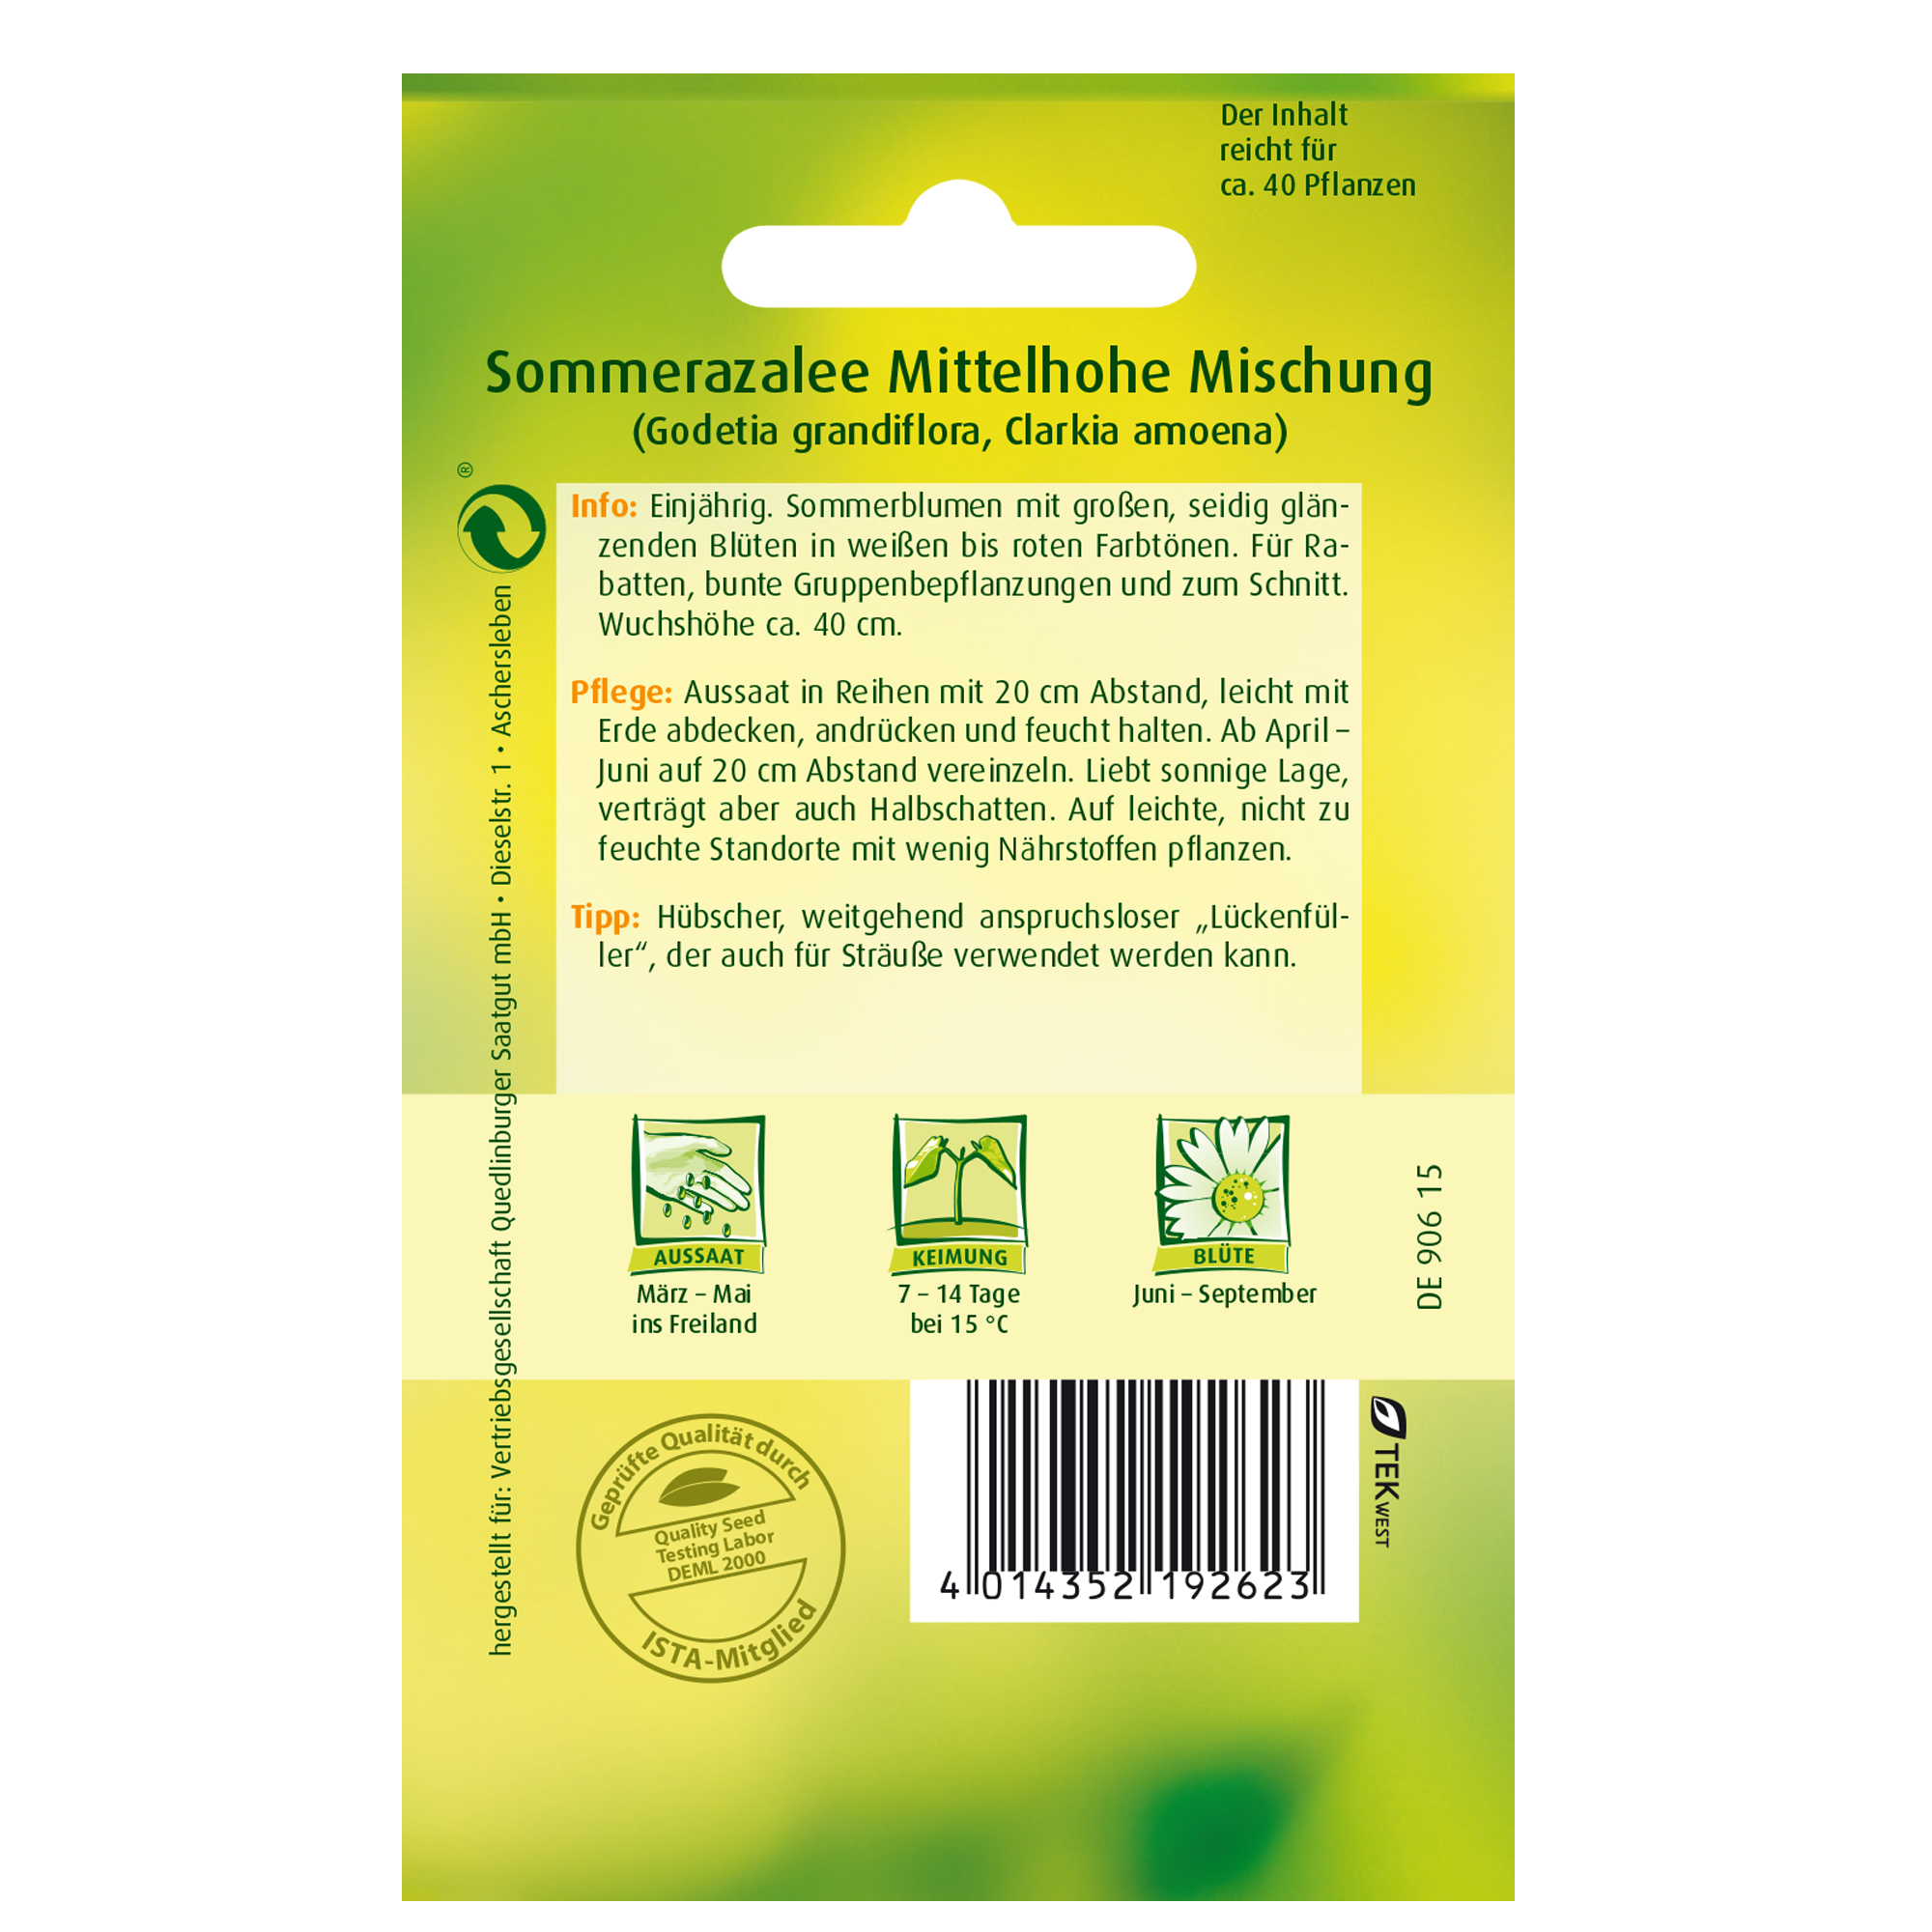 Sommerazaleen mittelhoch, Mischung + product picture